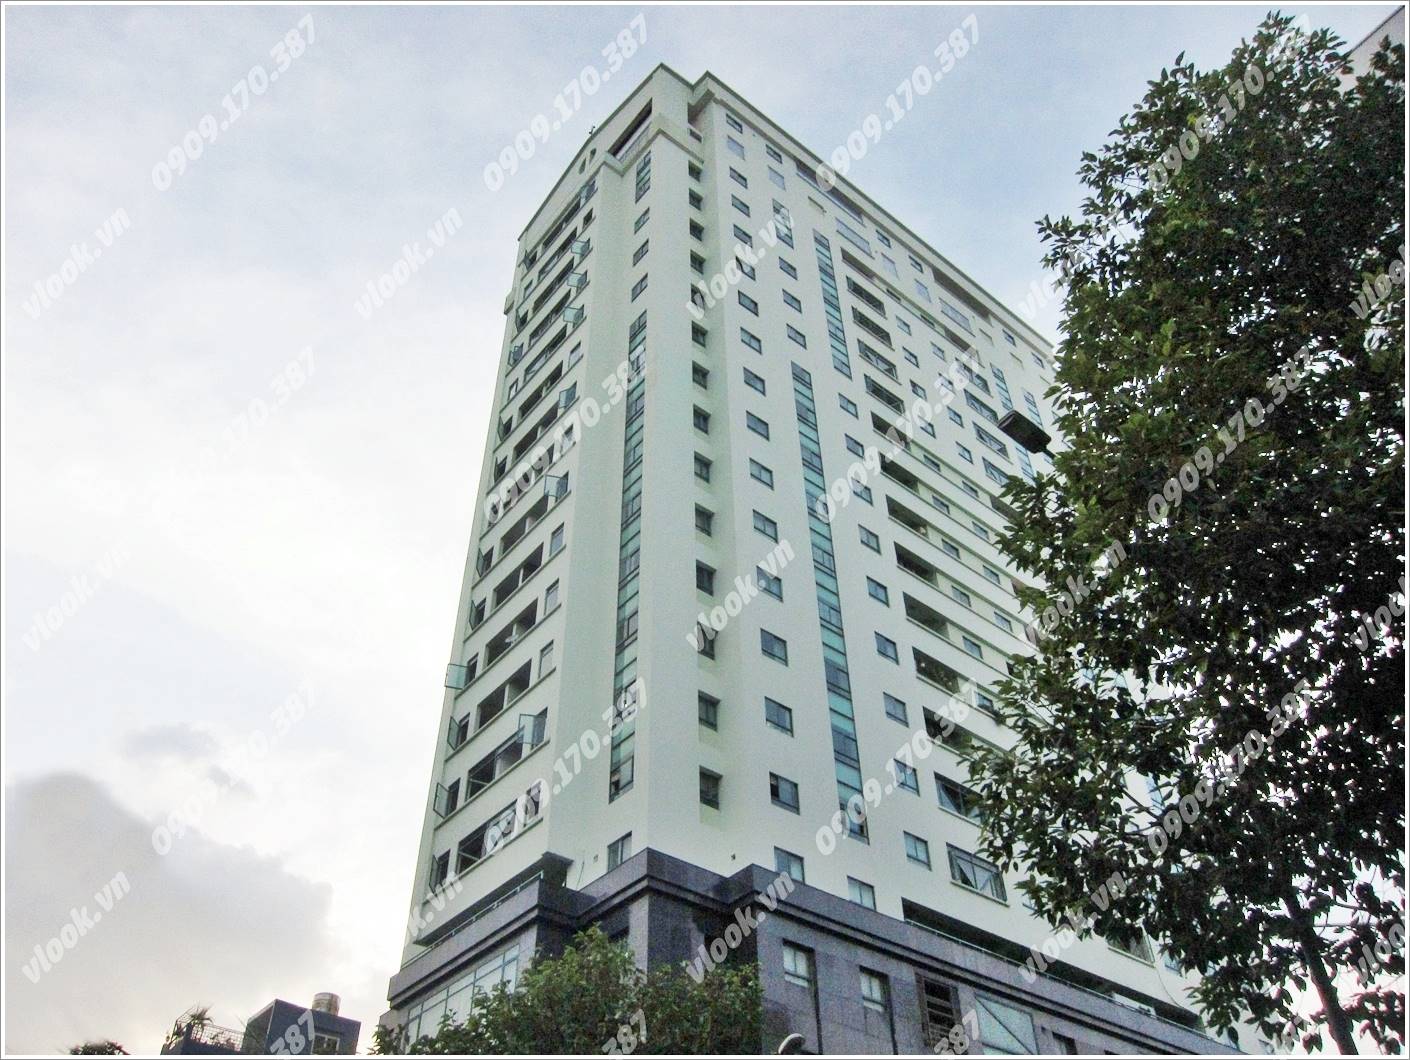 Tòa cao ốc văn phòng cho thuê Indochina Park Tower, Nguyễn Đình Chiểu, Quận 1 - vlook.vn